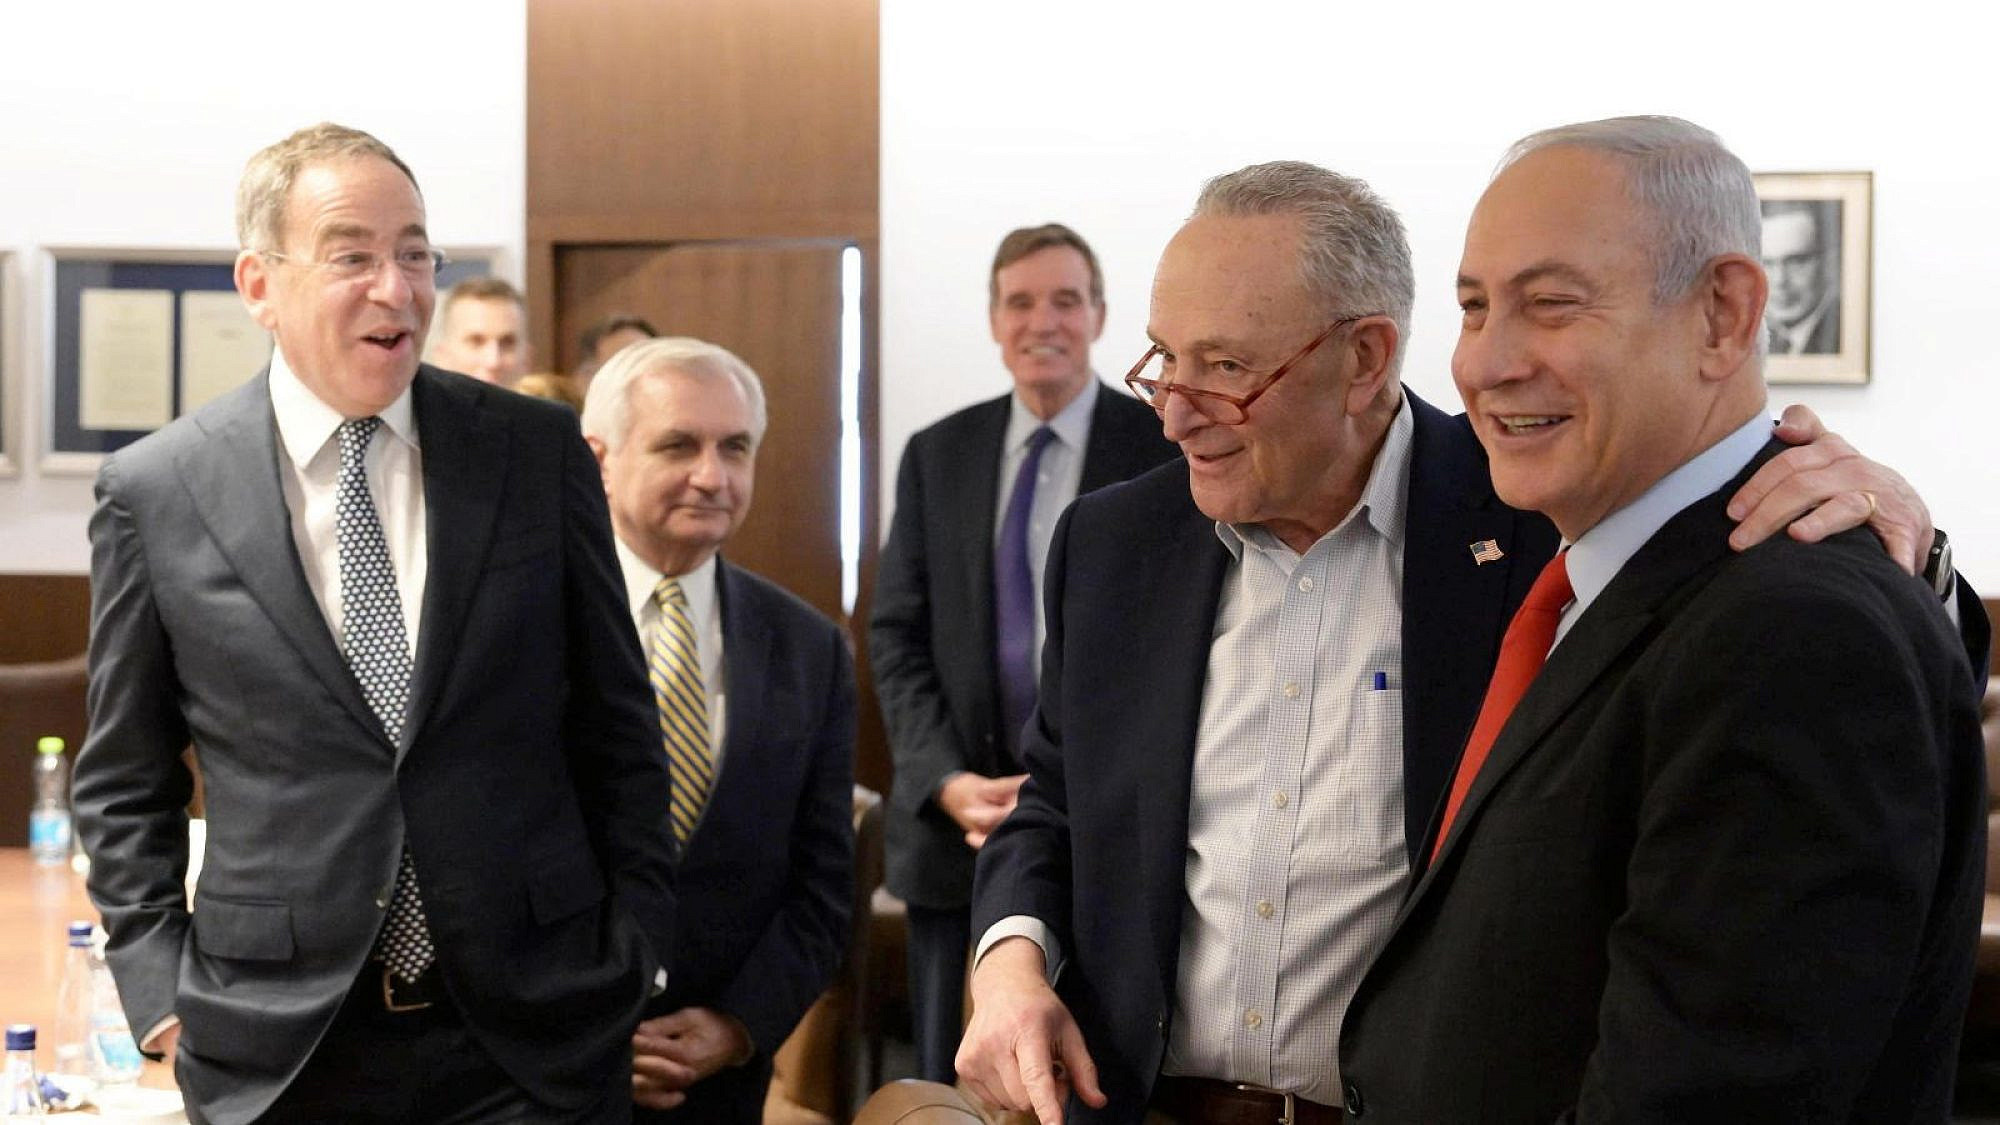 Senate Democrat delegation meets with Netanyahu 